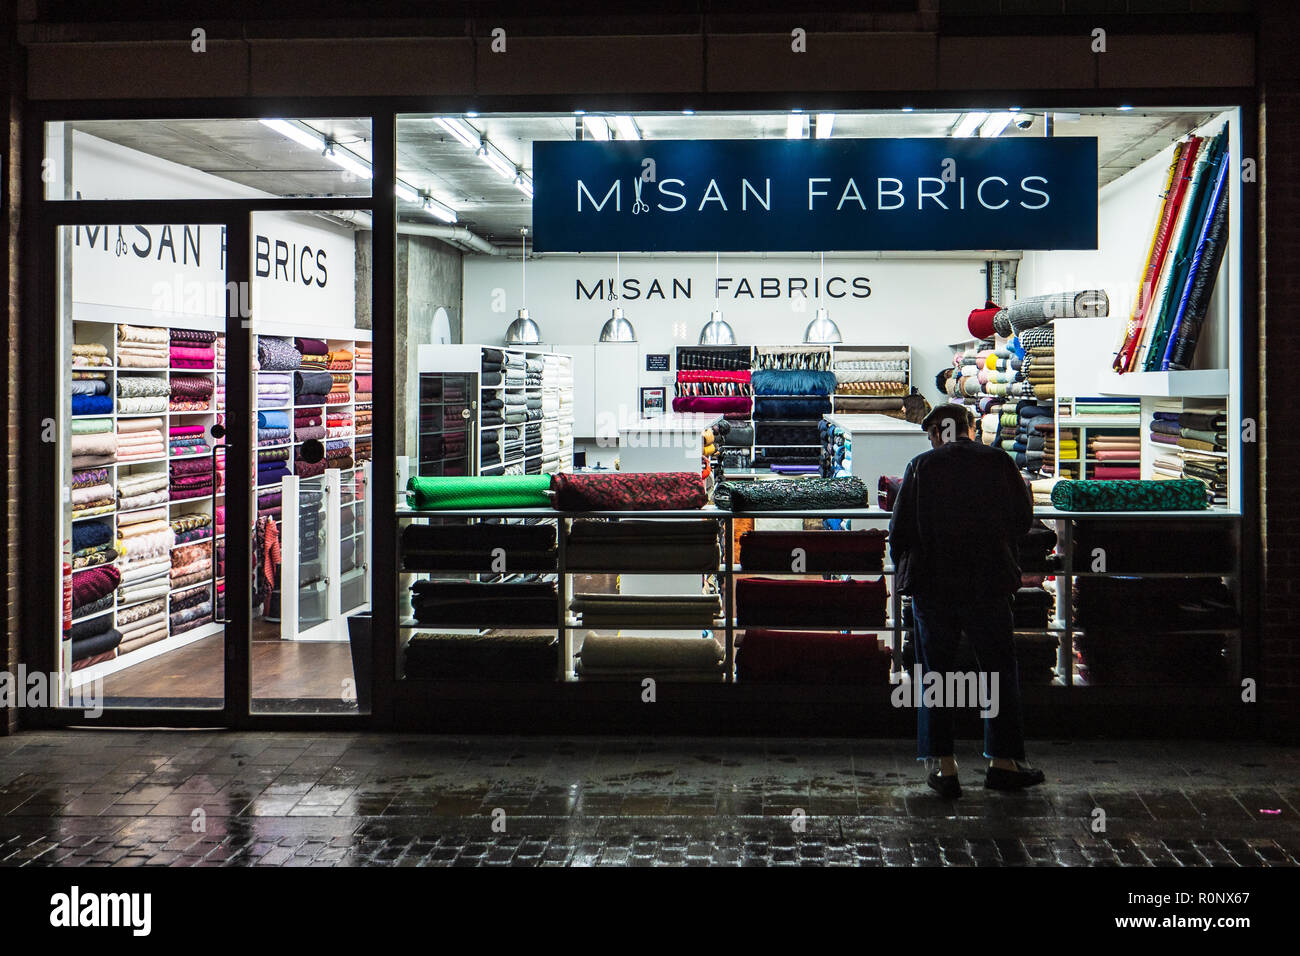 Londres Fabric Shop - Misan telas en Berwick Street en el distrito del Soho de Londres. Berwick St es bien conocida por sus tiendas de tela. Foto de stock